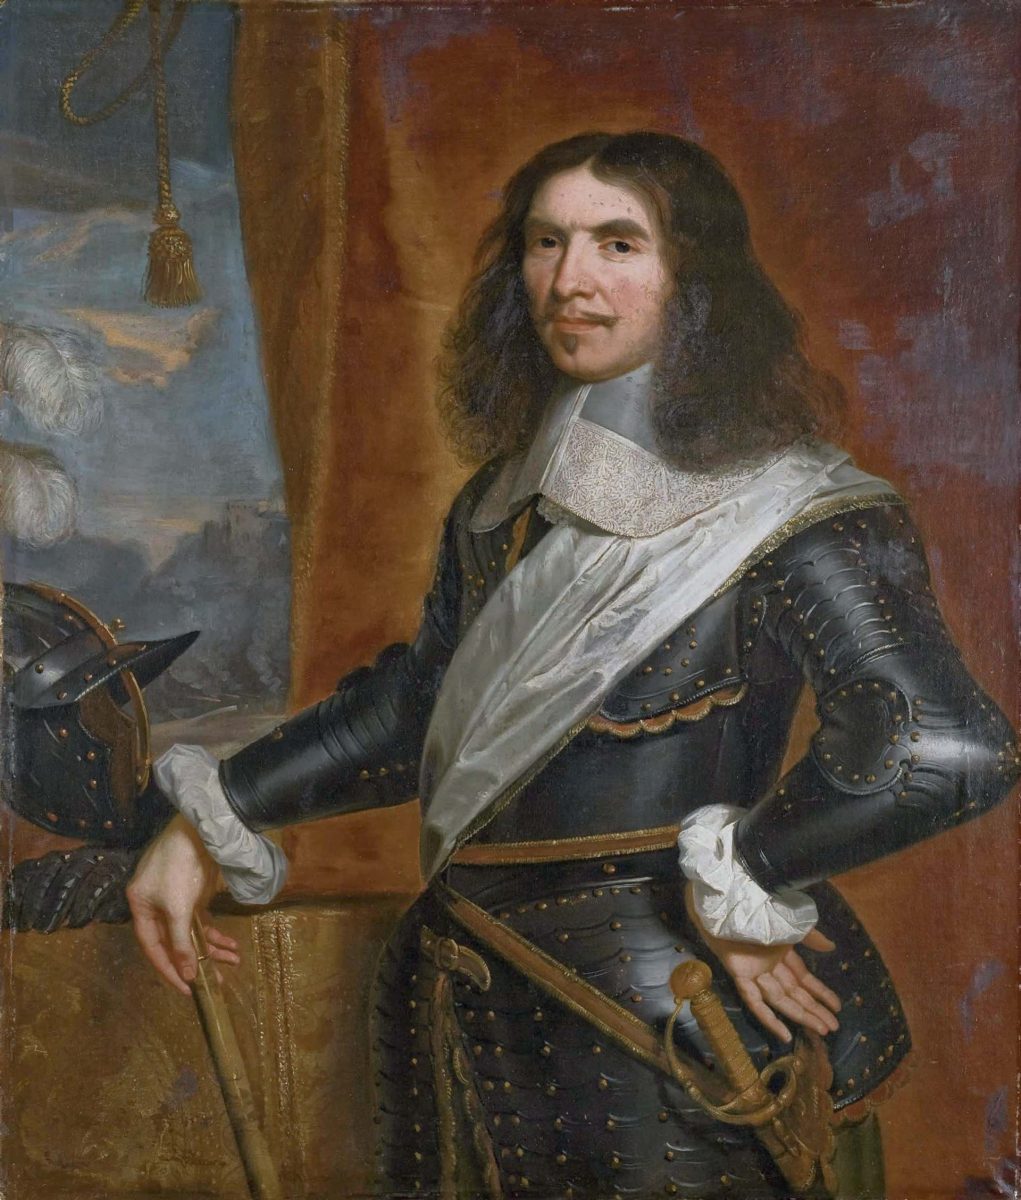 Henri de la Tour d'Auvergne, Viscount of Turenne